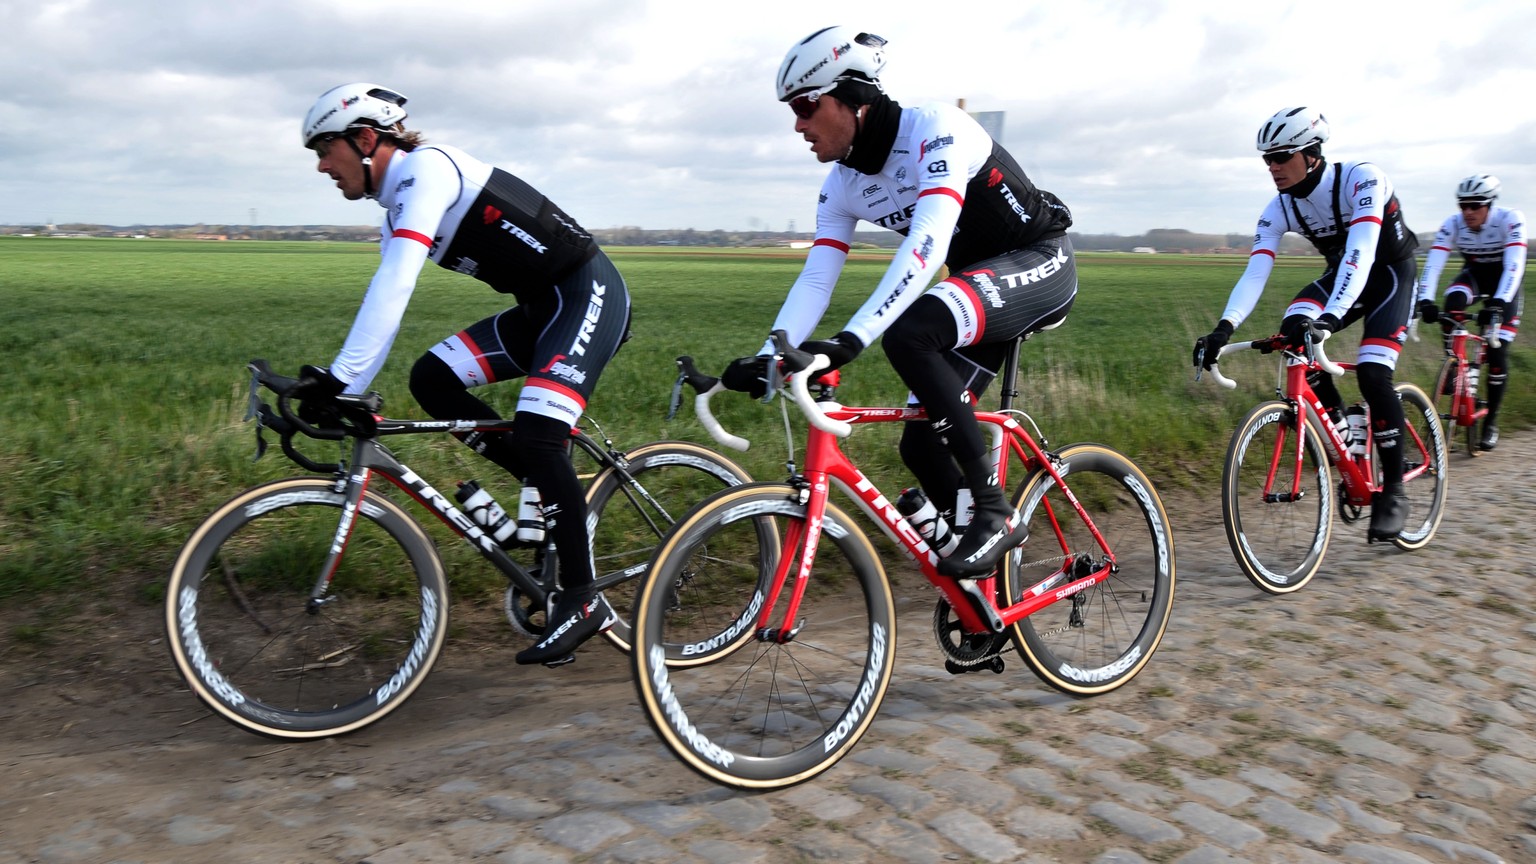 Cancellara (mit dem schwarzen Velo) und seine Teamkollegen während der Woche bei einem Training auf der Rennstrecke.